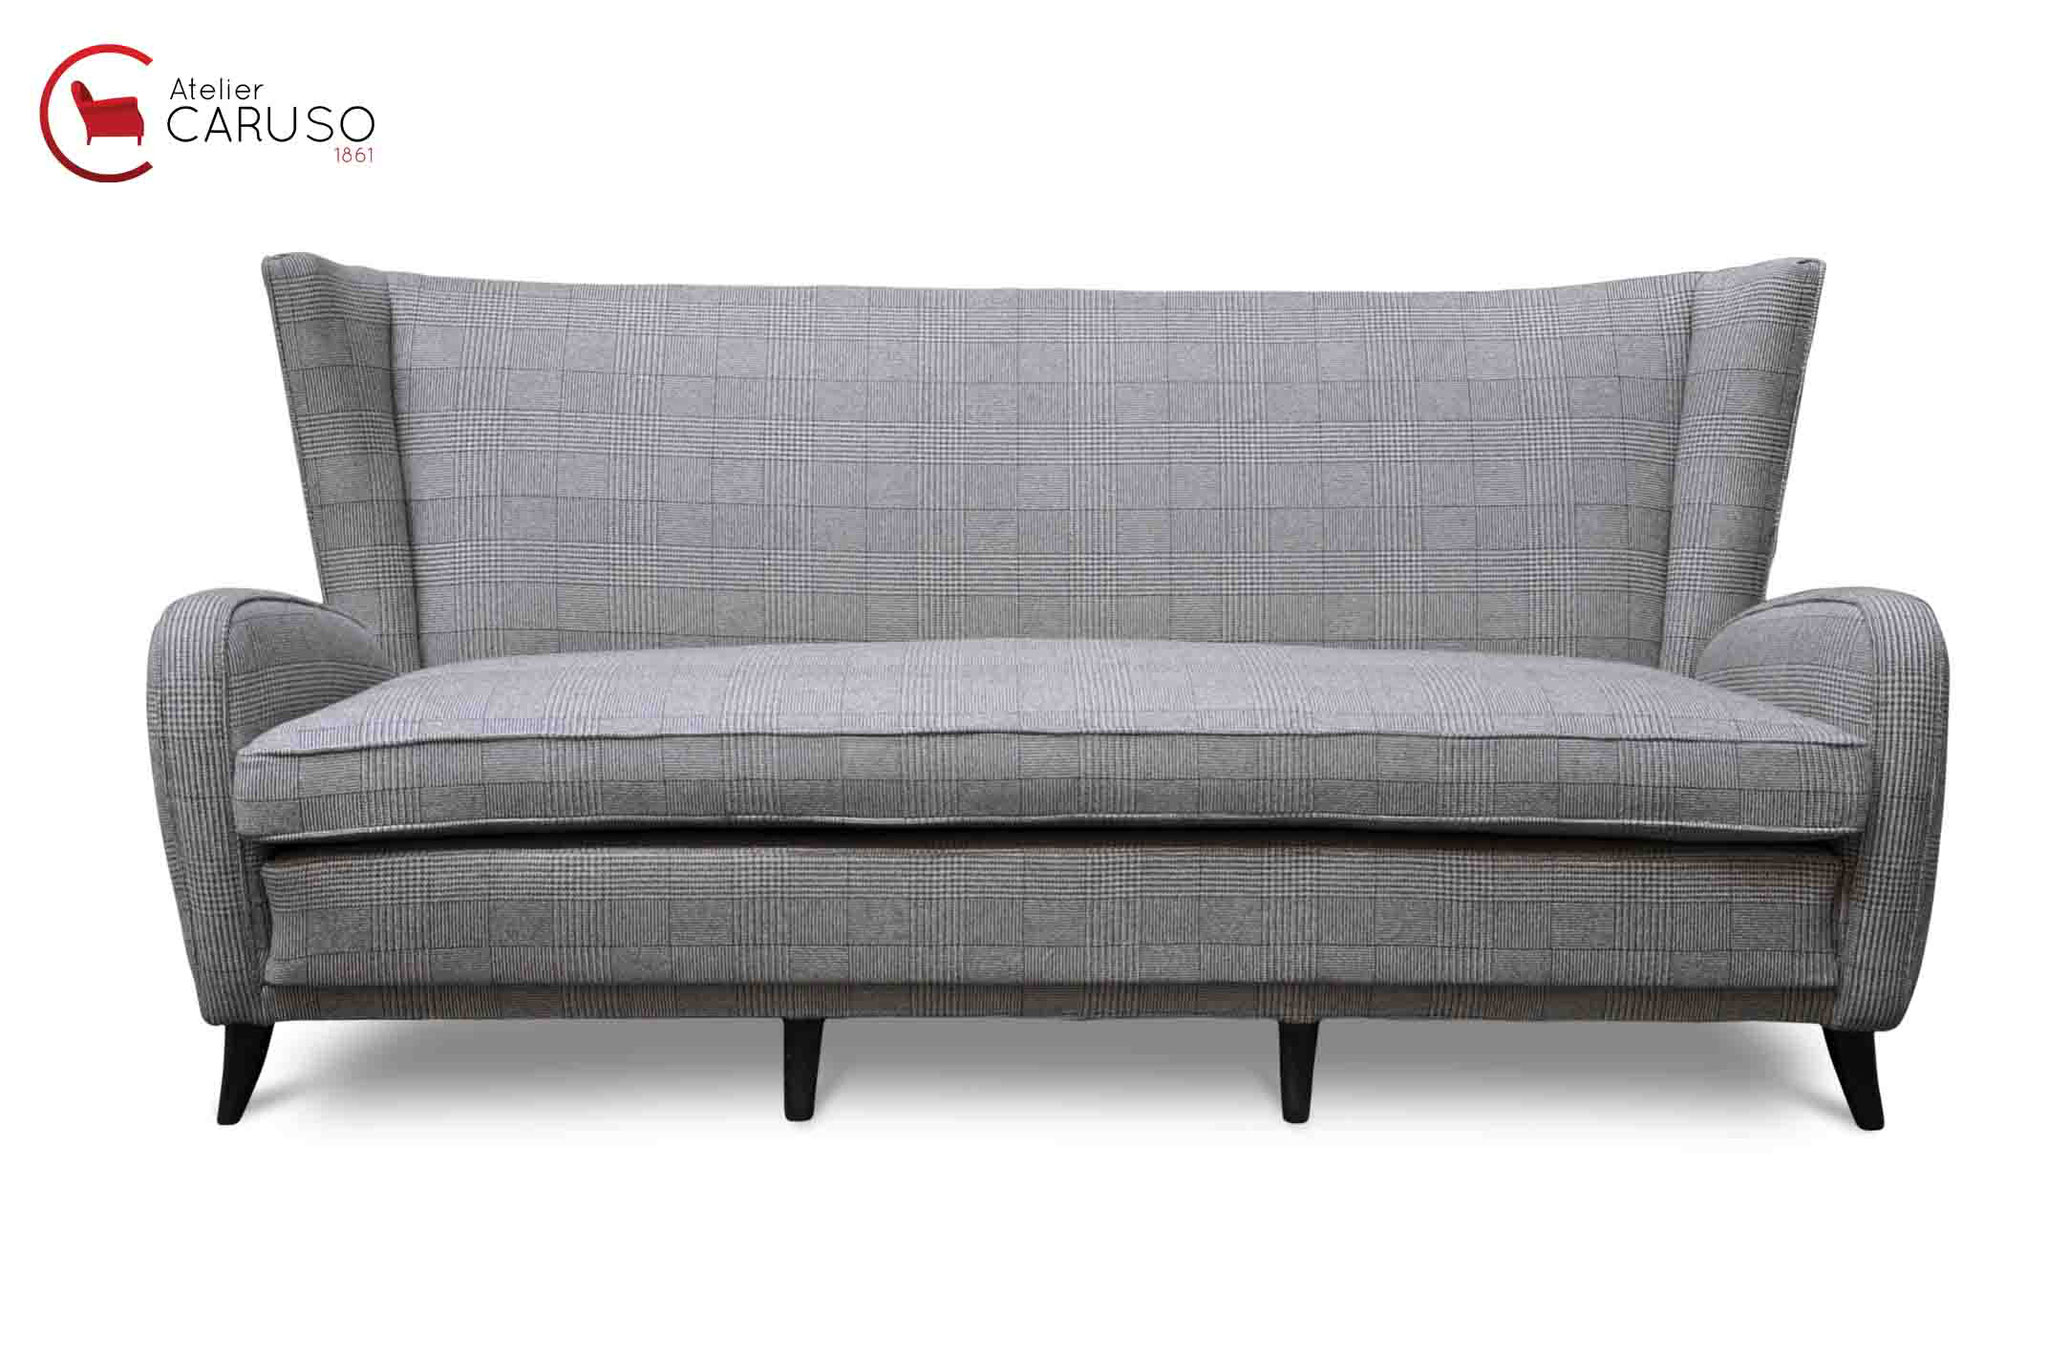 paolo buffa sofa new york